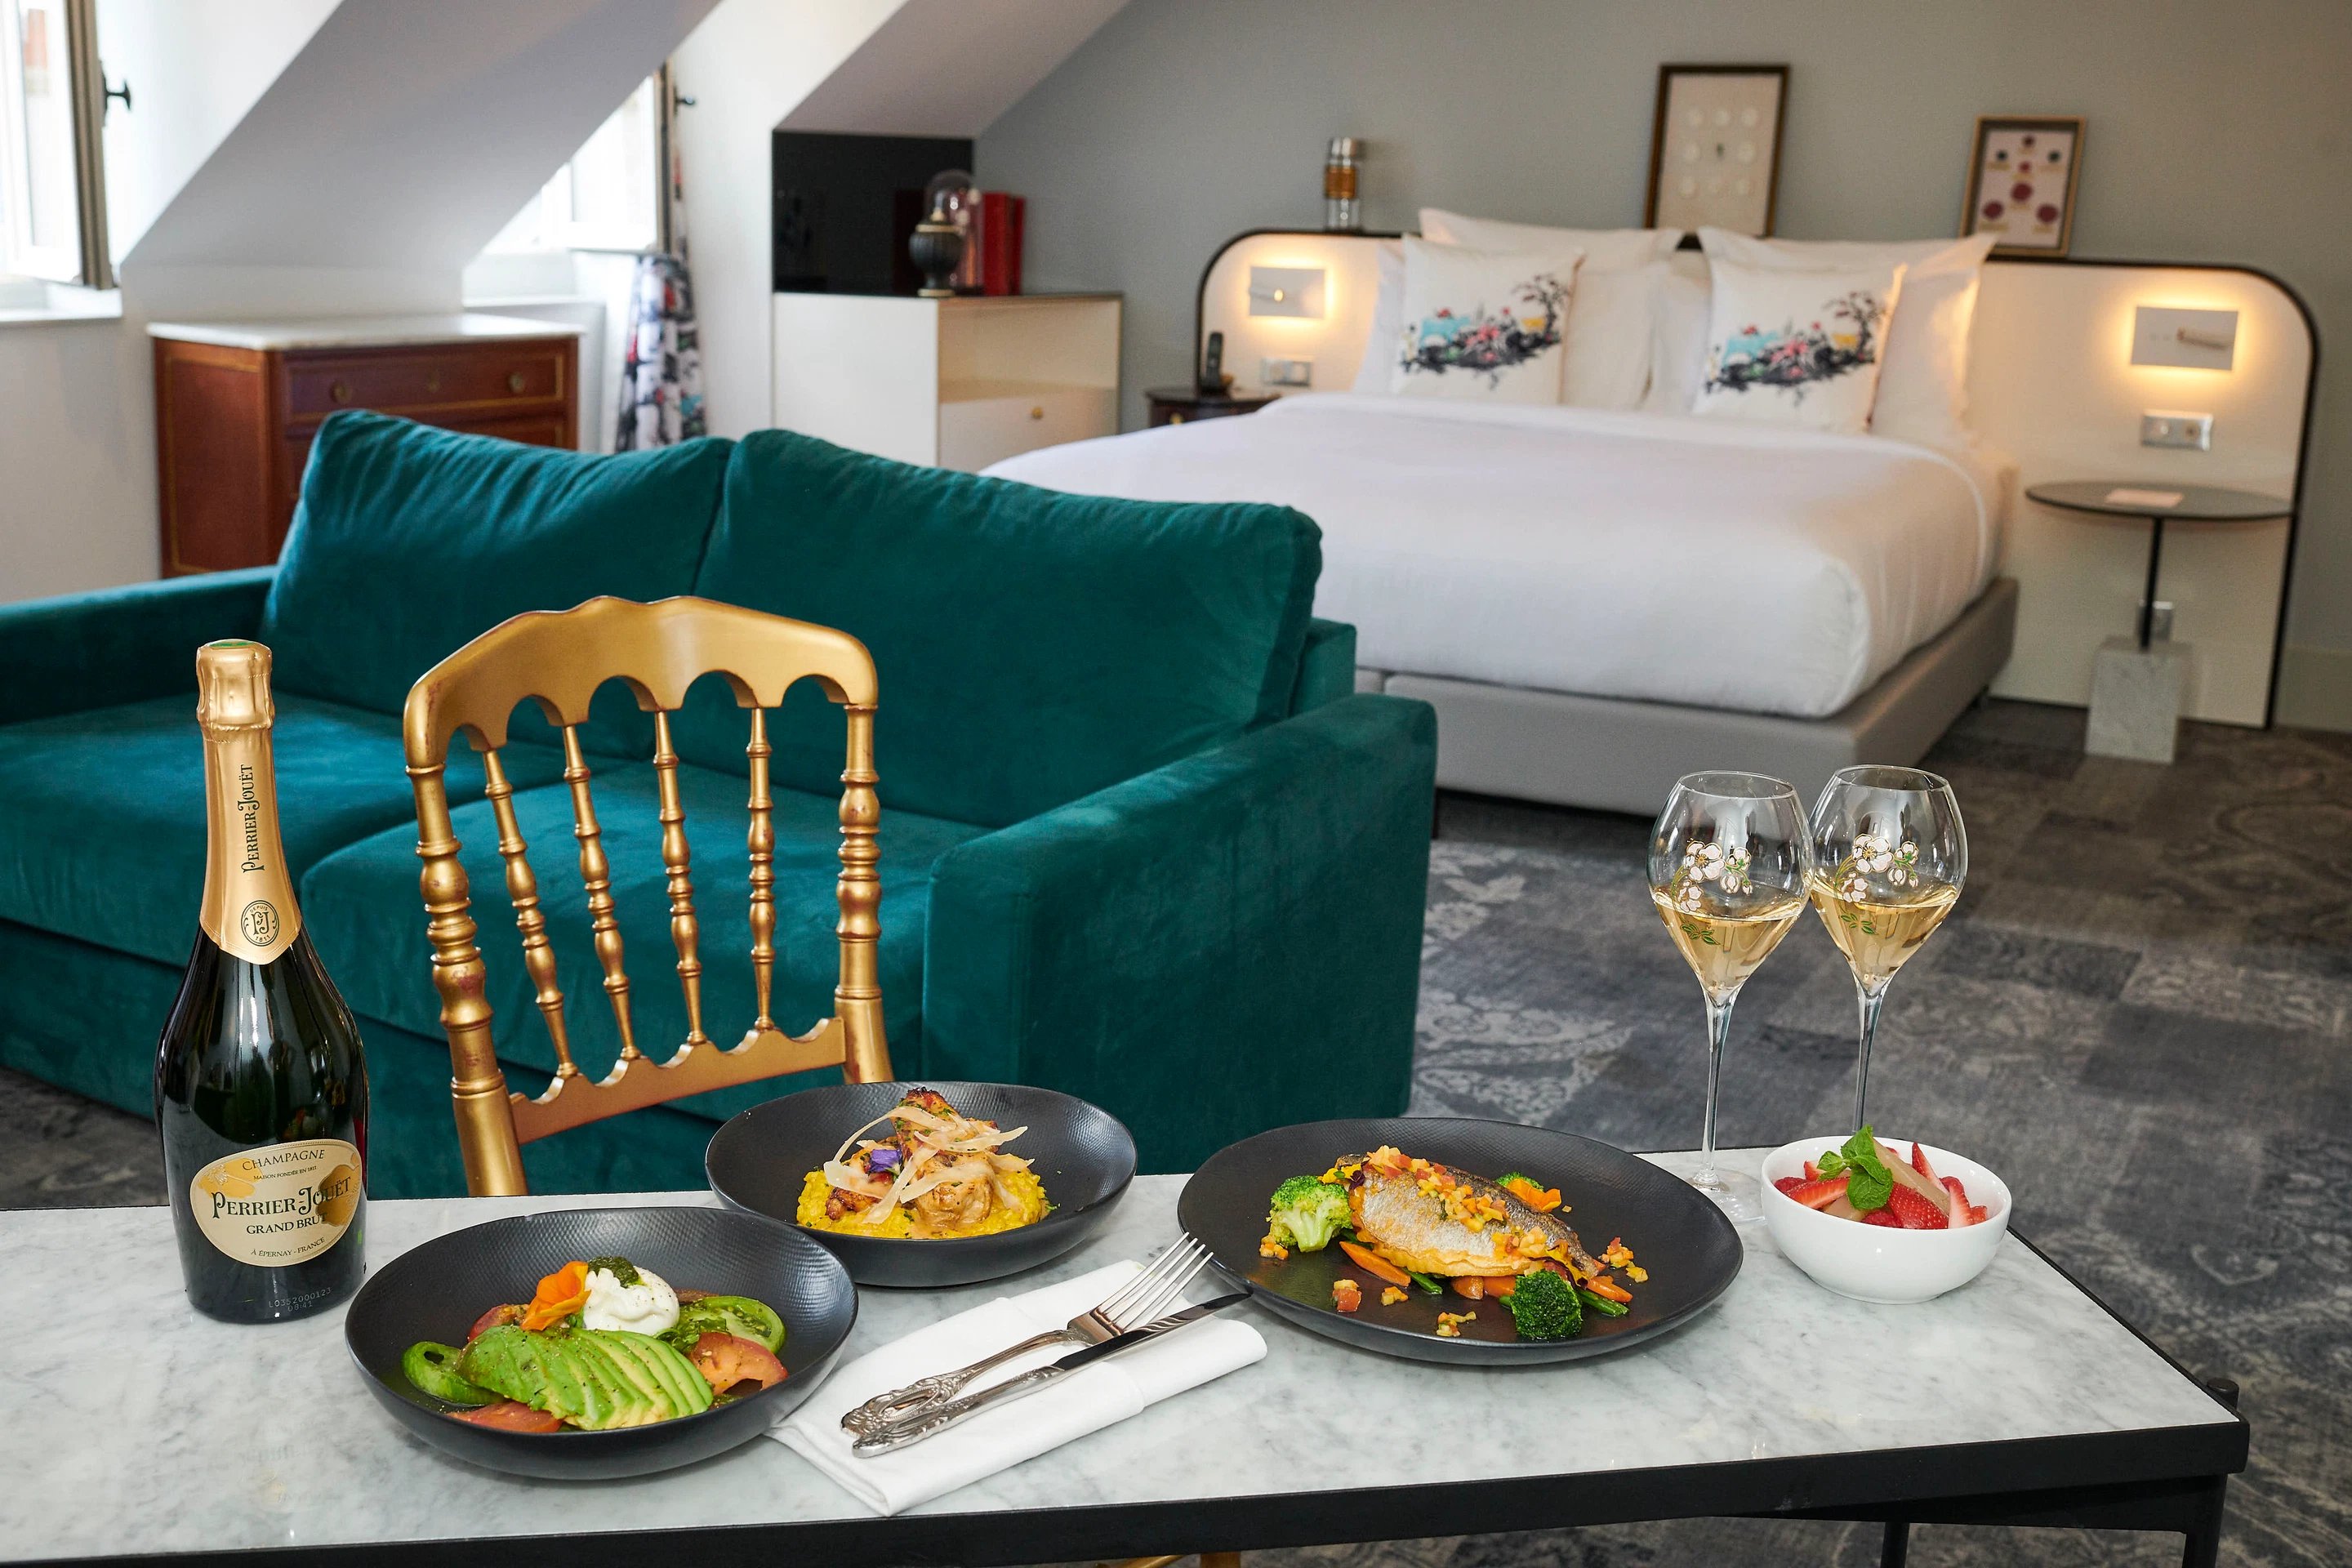 Normandy Hôtel Le Chantier - Suite Afterworks - Room service